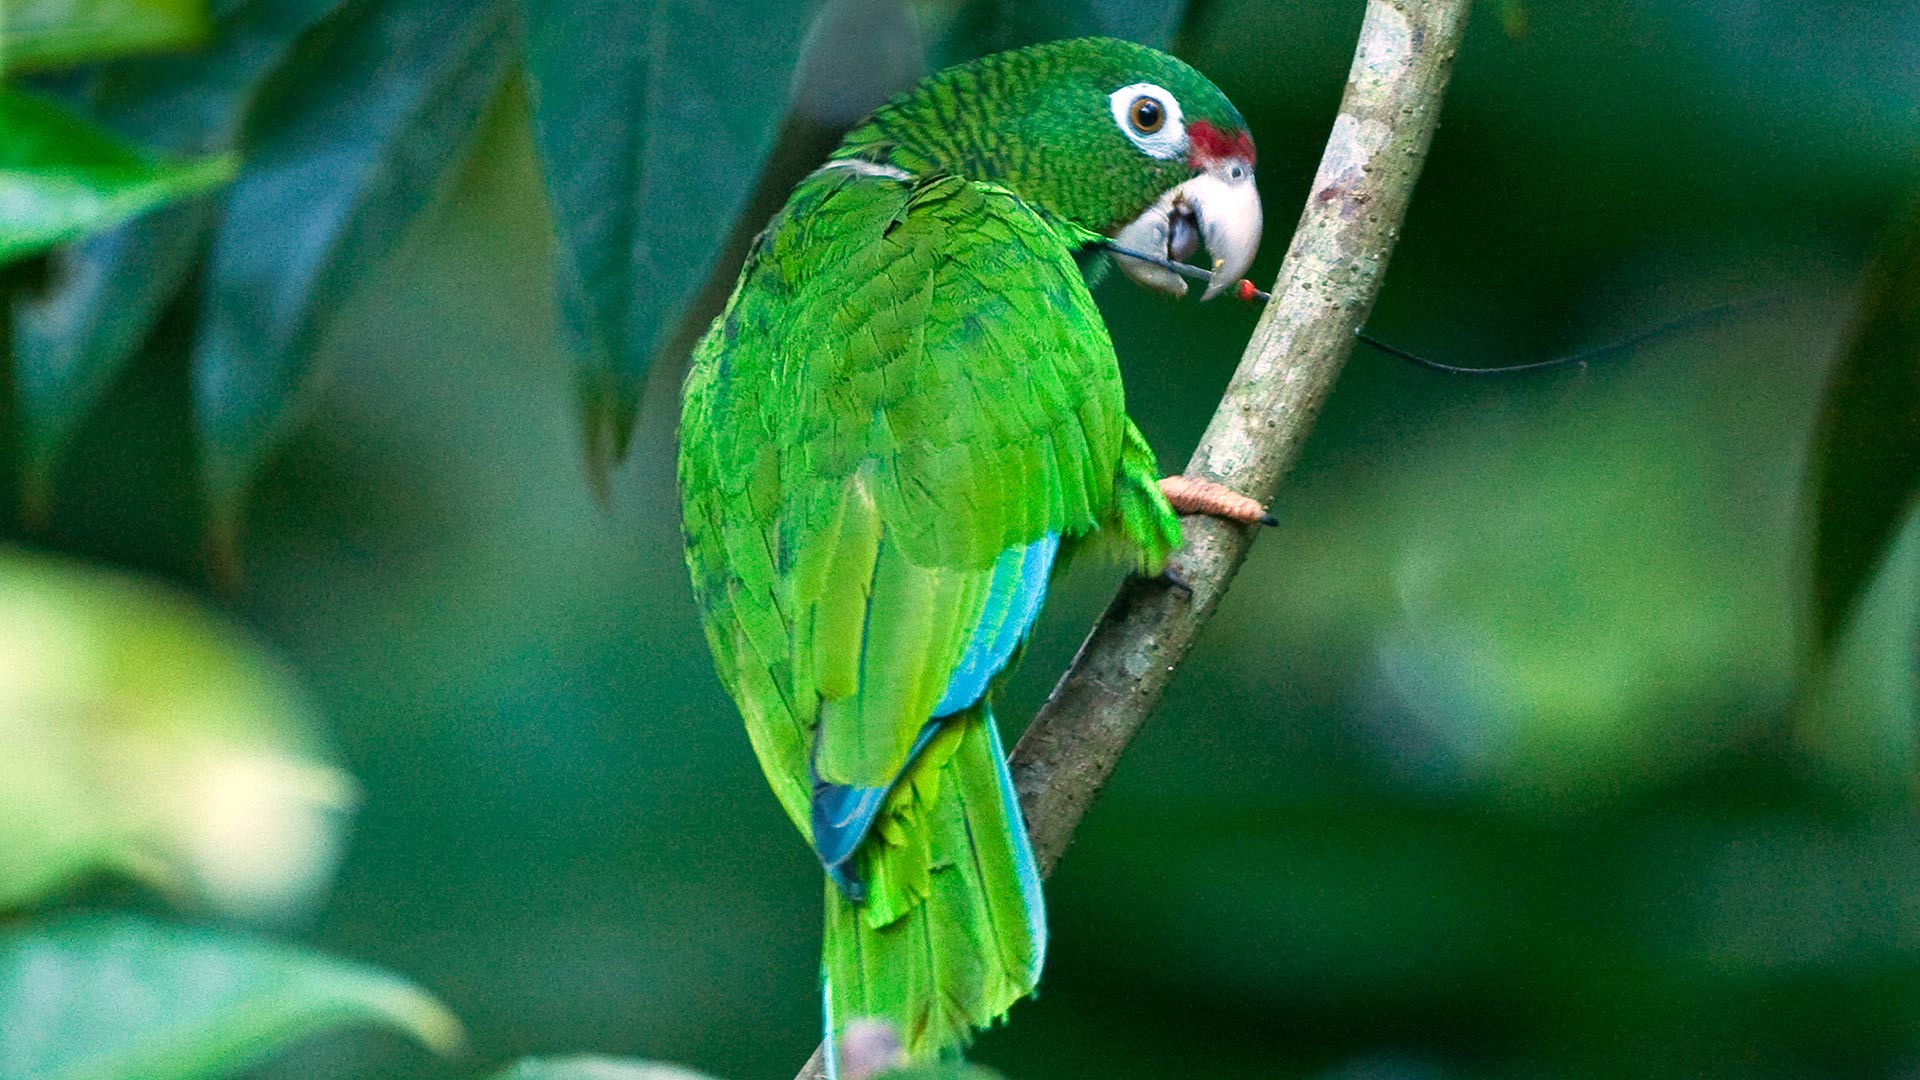 Puerto Rican parrot in the wild.